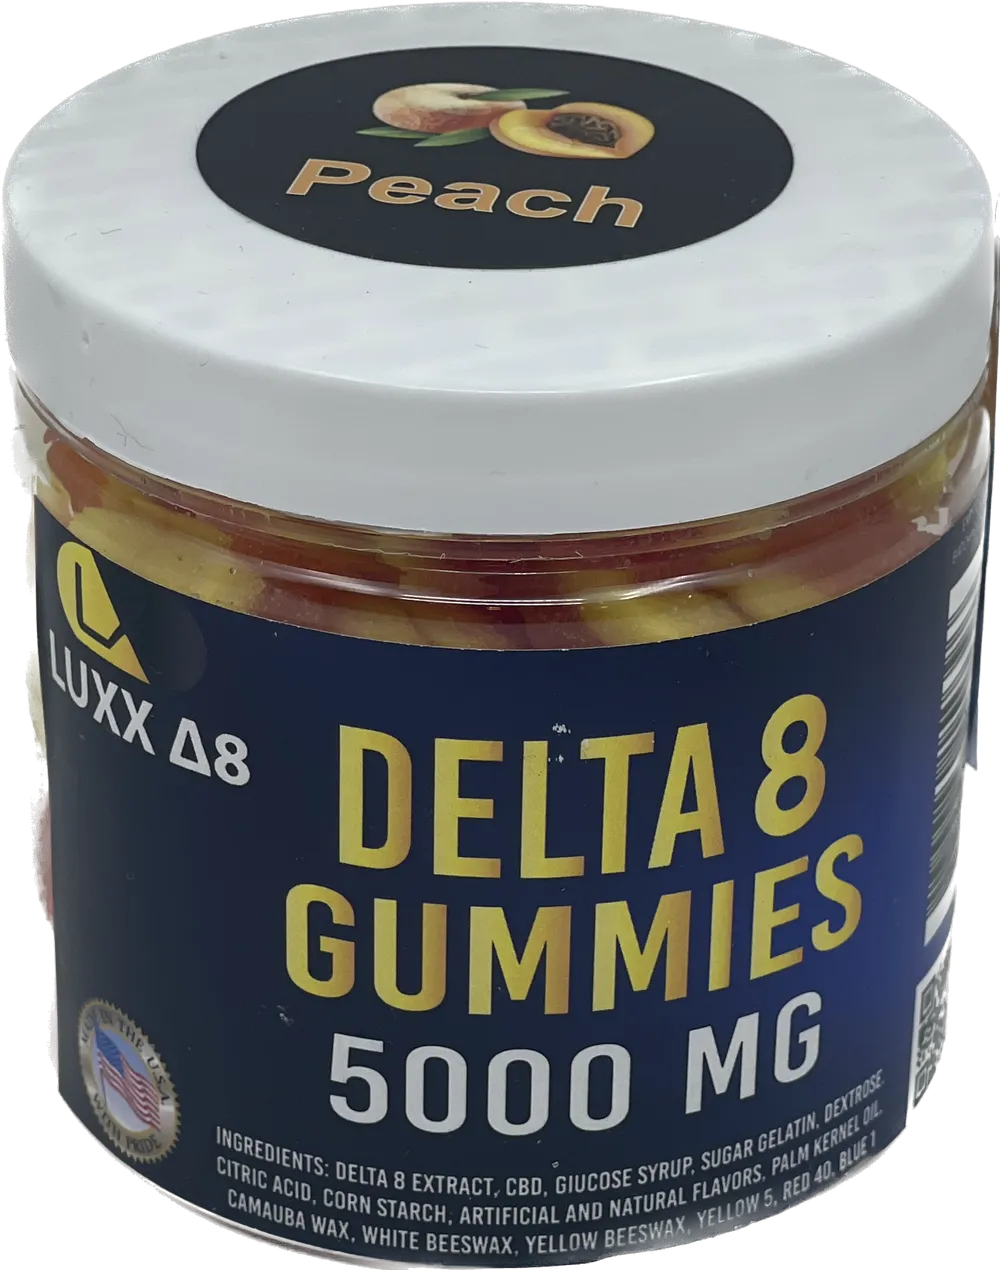 Luxx Delta 8 Gummies 5000mg Peach | 5000mg: Peach